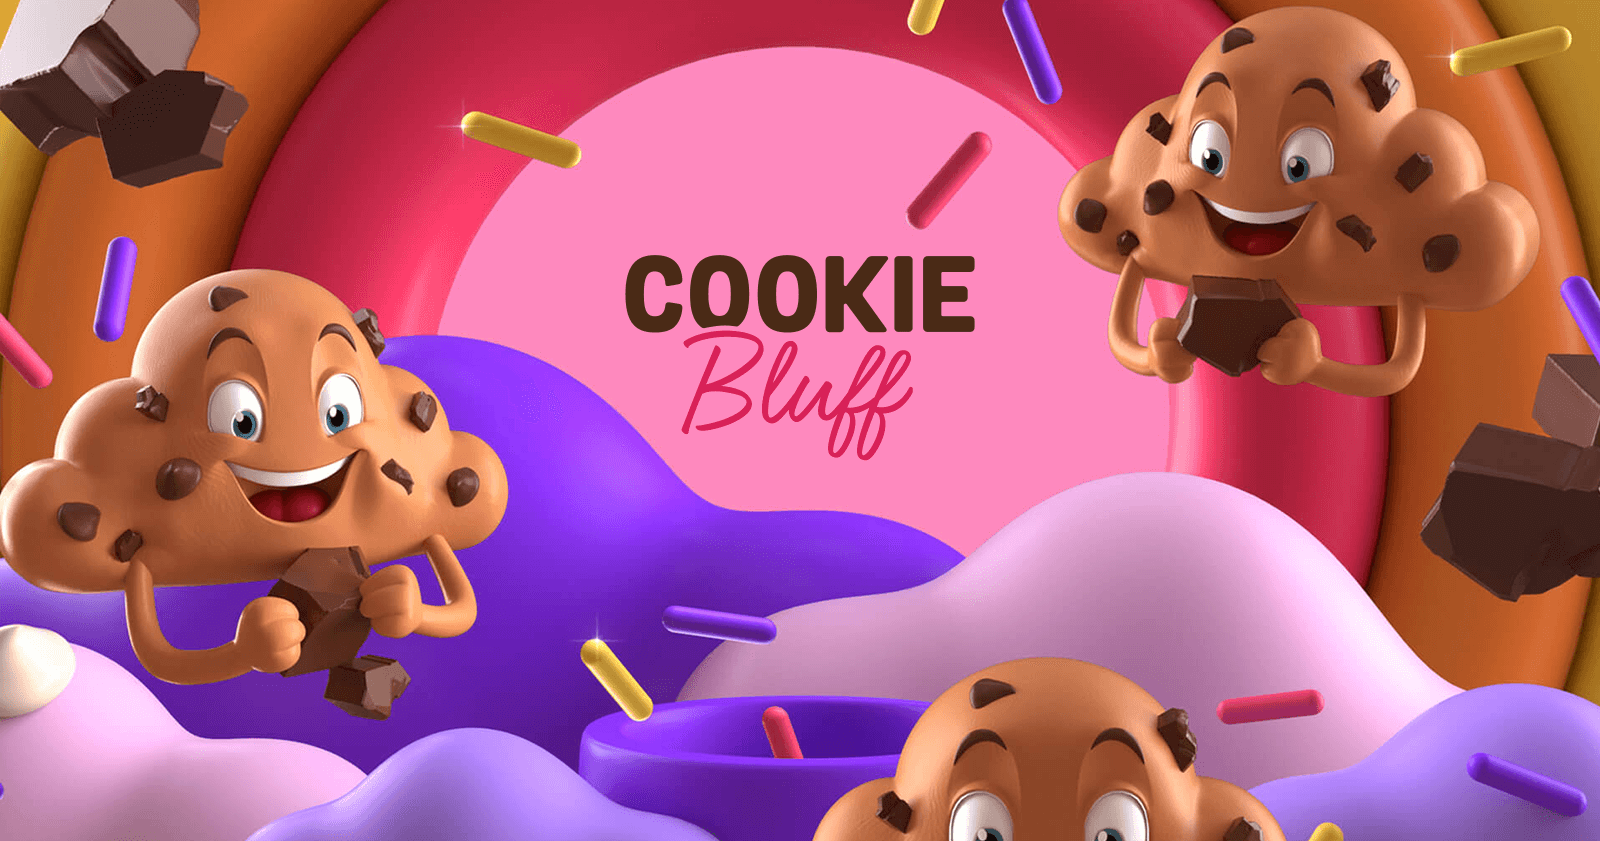 (c) Cookiebluff.com